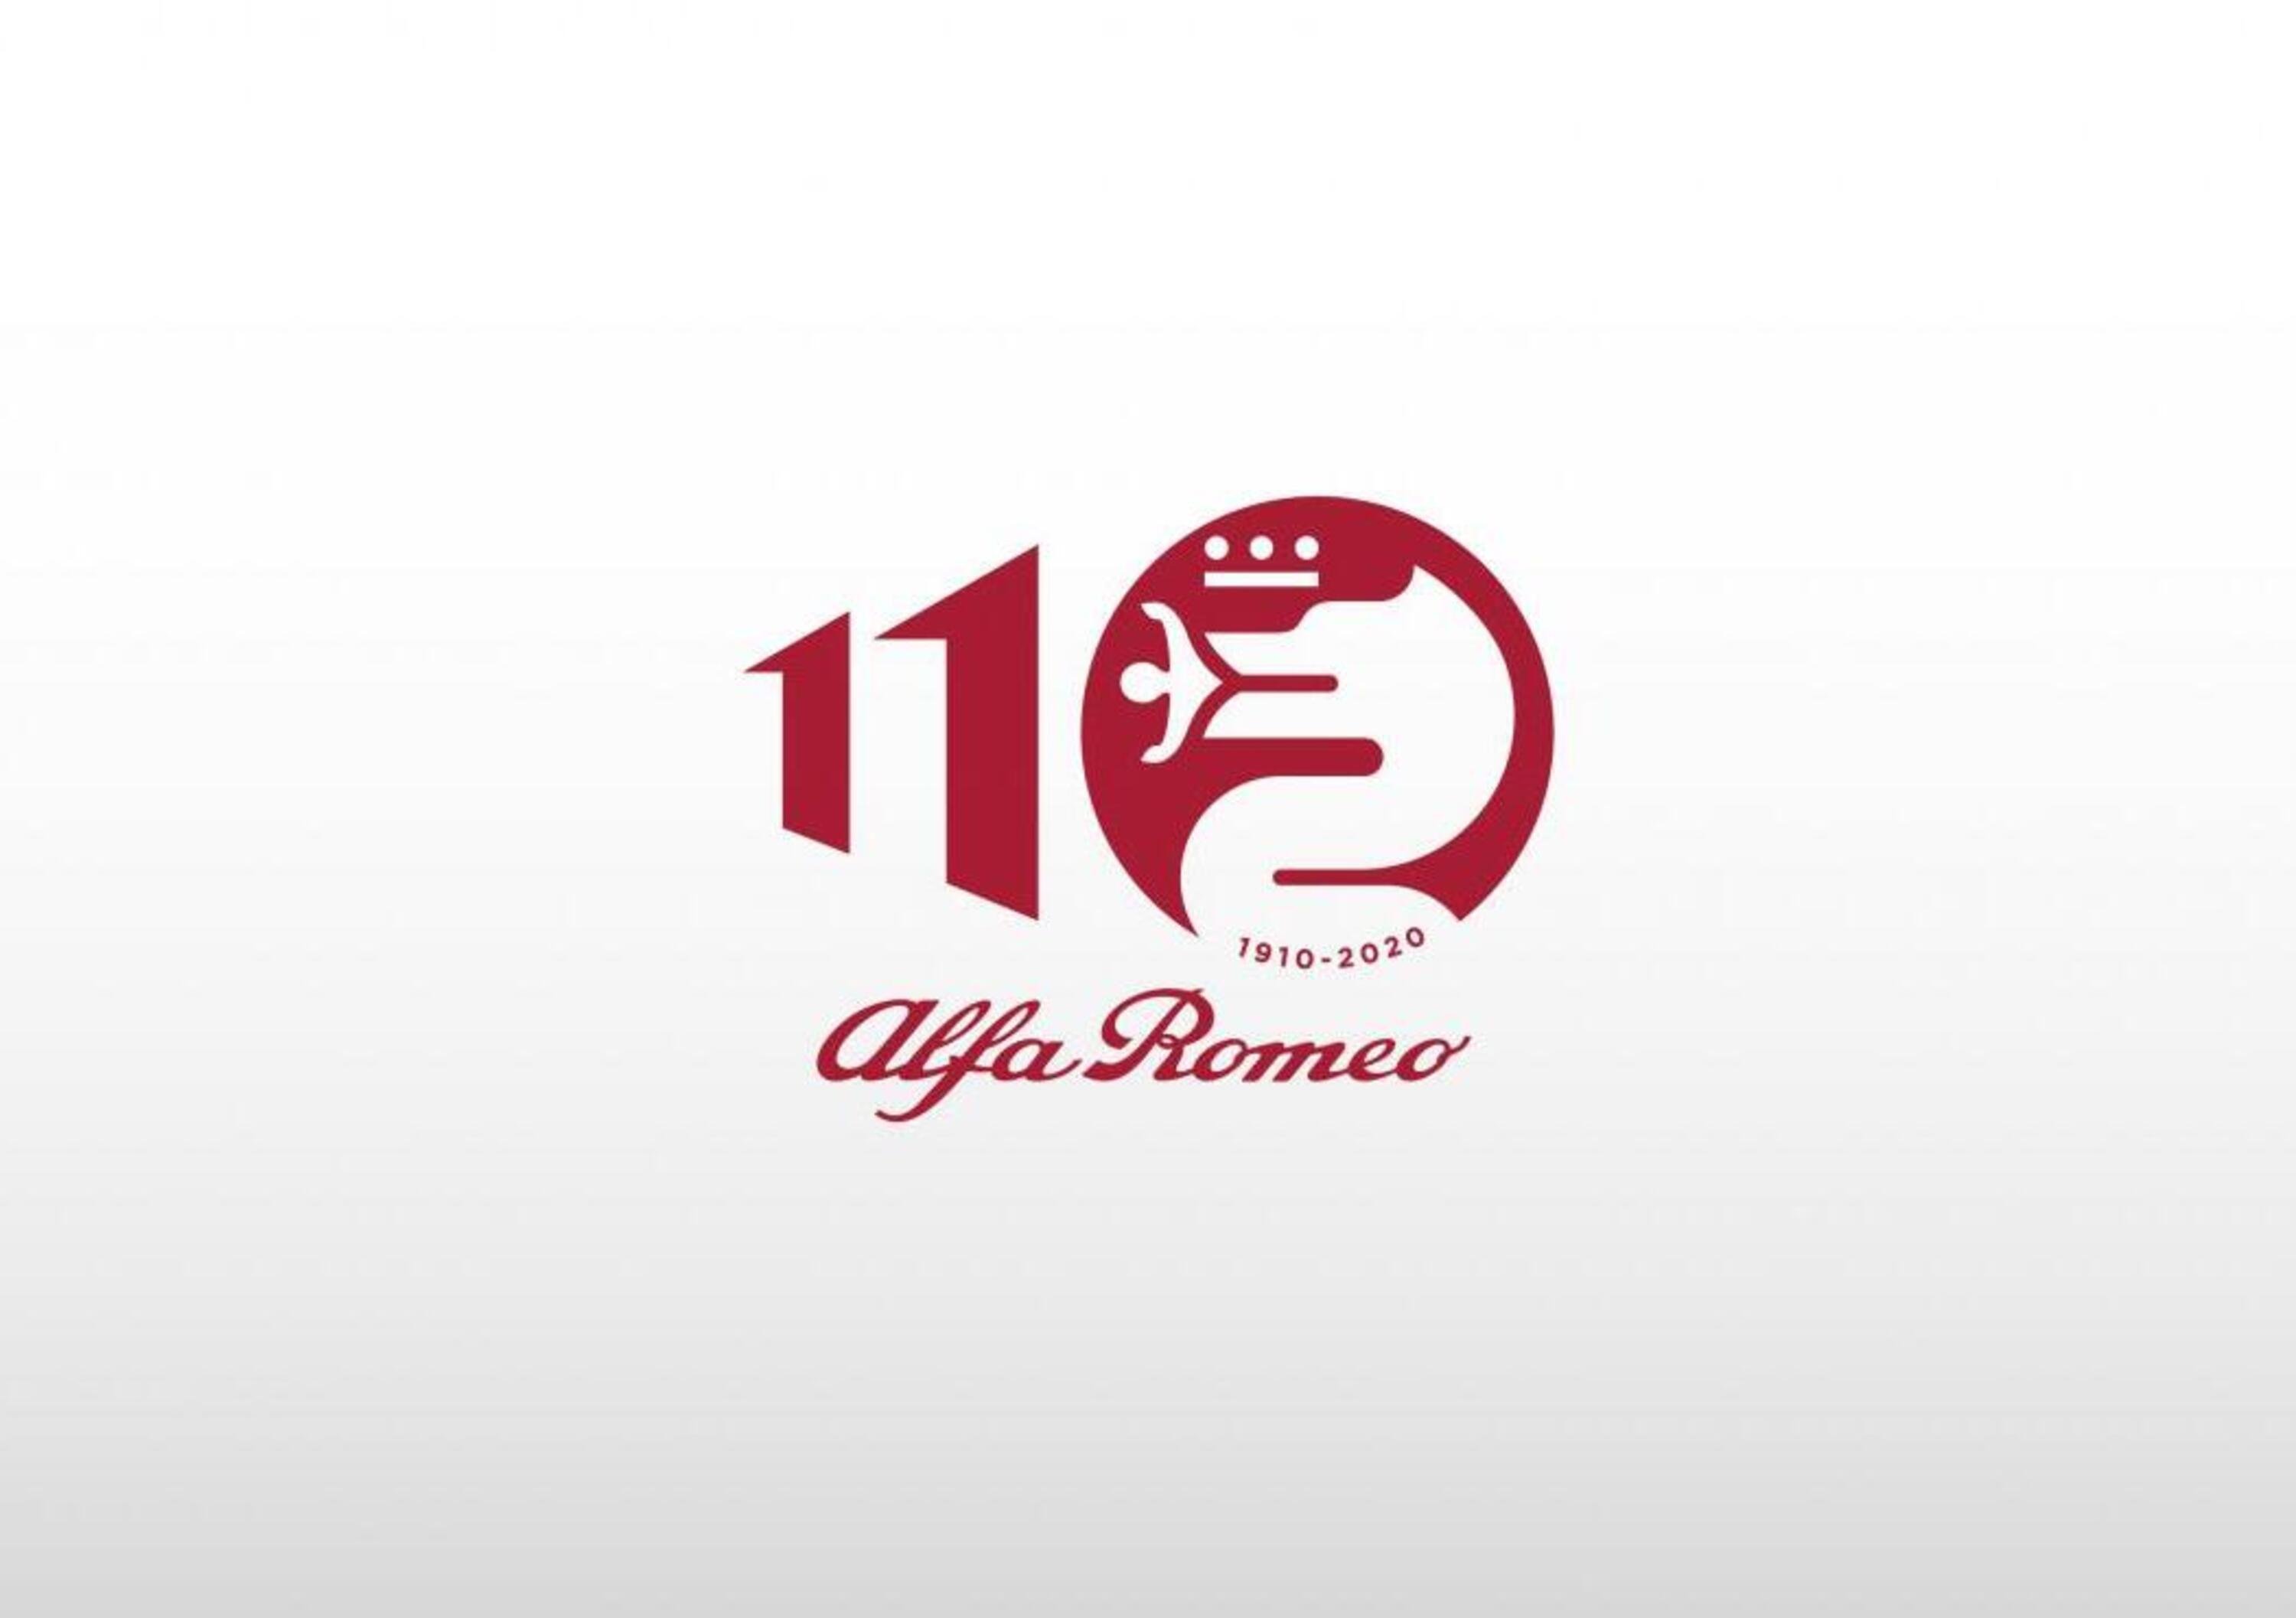 Alfa Romeo: logo celebrativo per i 110 anni di storia